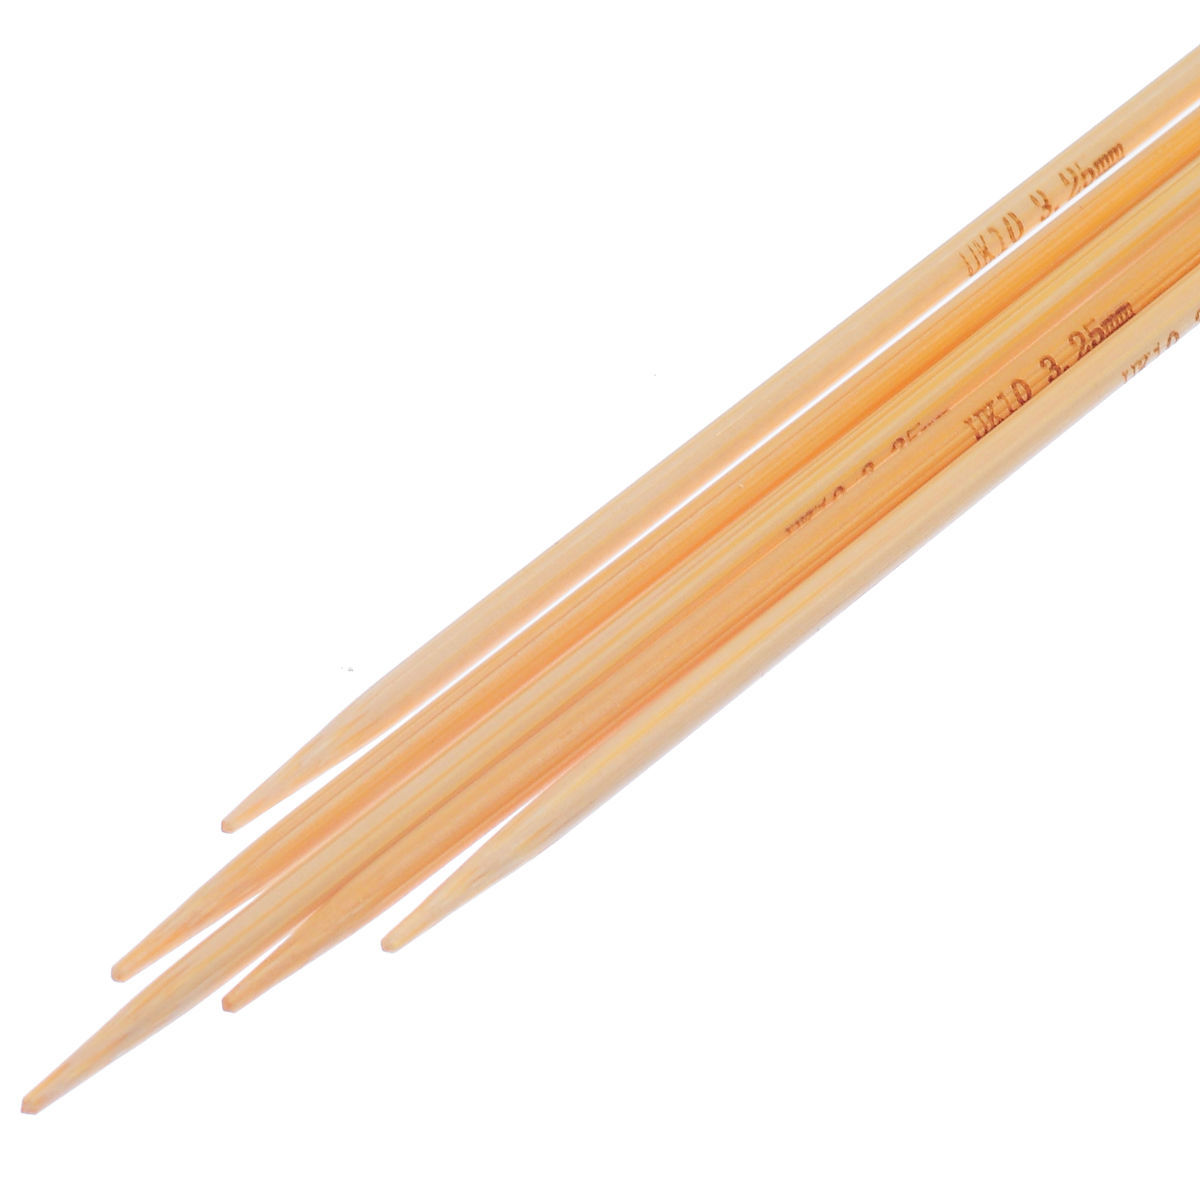 (UK10 3.25mm) 竹 ダブルポイント 編み針 ナチュラル 15cm 長さ、 1 セット ( 5 個/セット) の画像